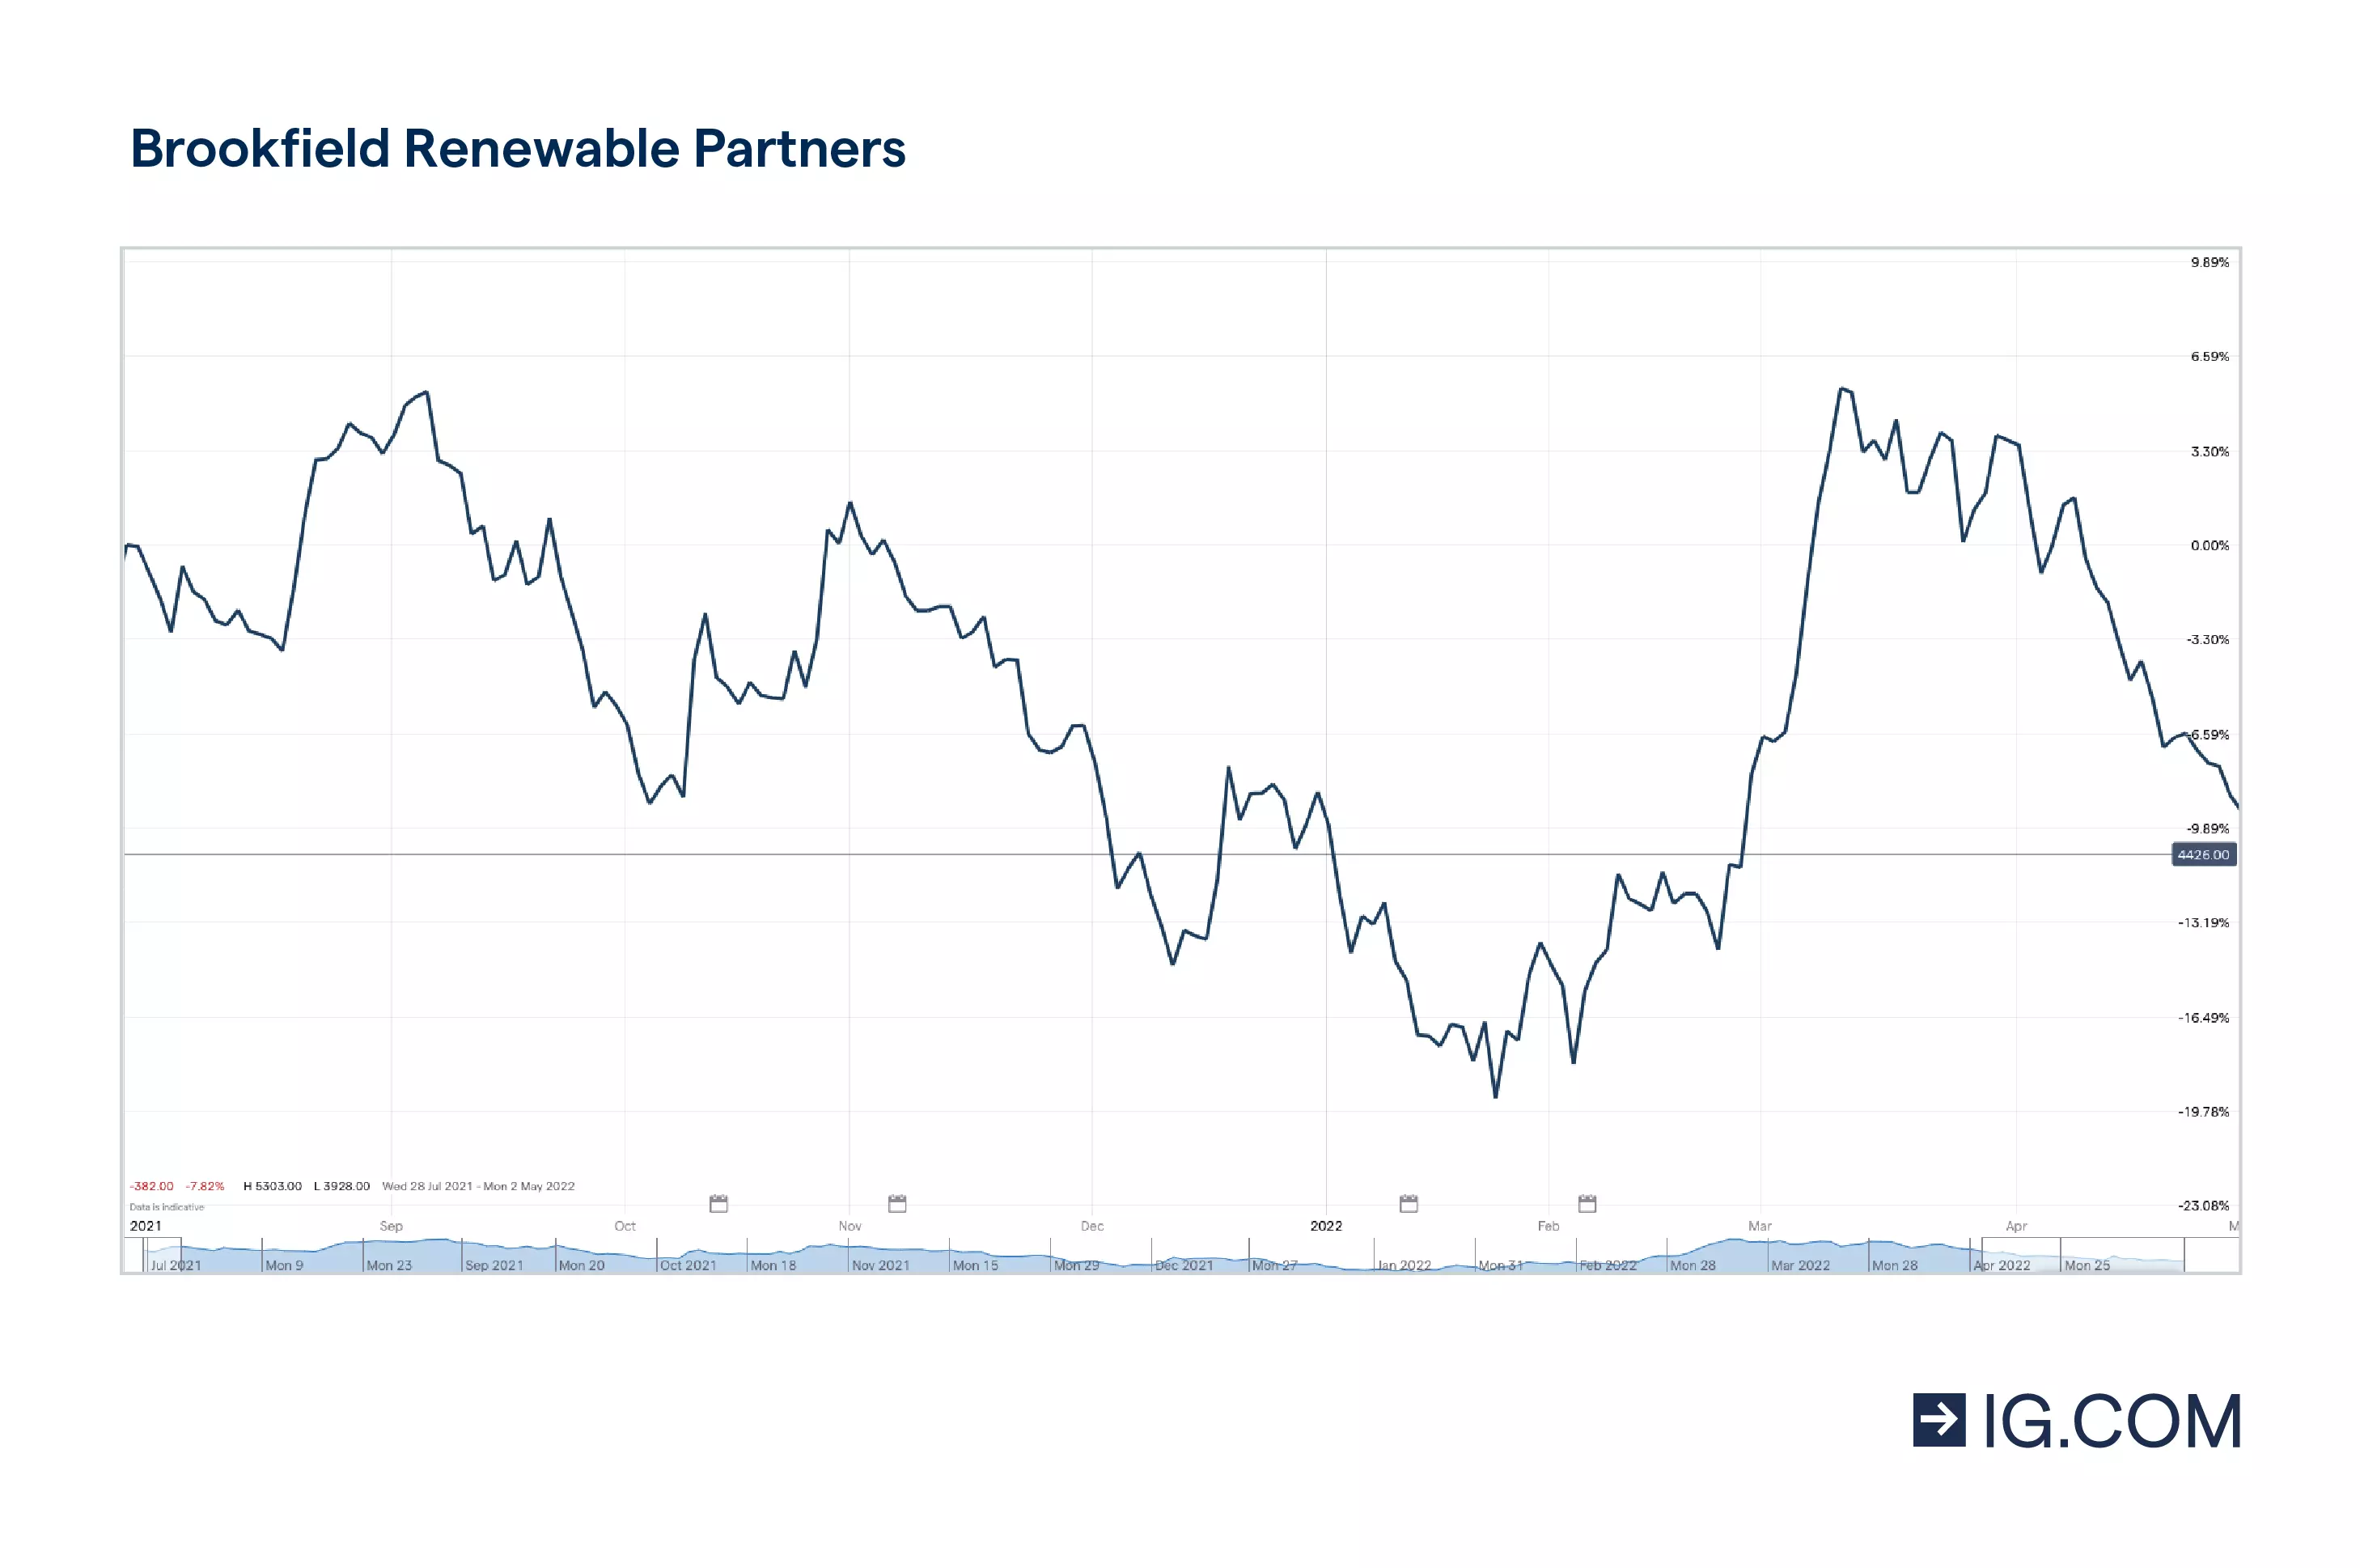 Las acciones de Brookfield Renewable Energy durante un periodo de un año, alcanzando diferentes niveles de precios, tocando techo con 43,91 en abril de 2021 y cayendo ligeramente después, así como la cotización de la acción de 39,91 en abril de 2022.